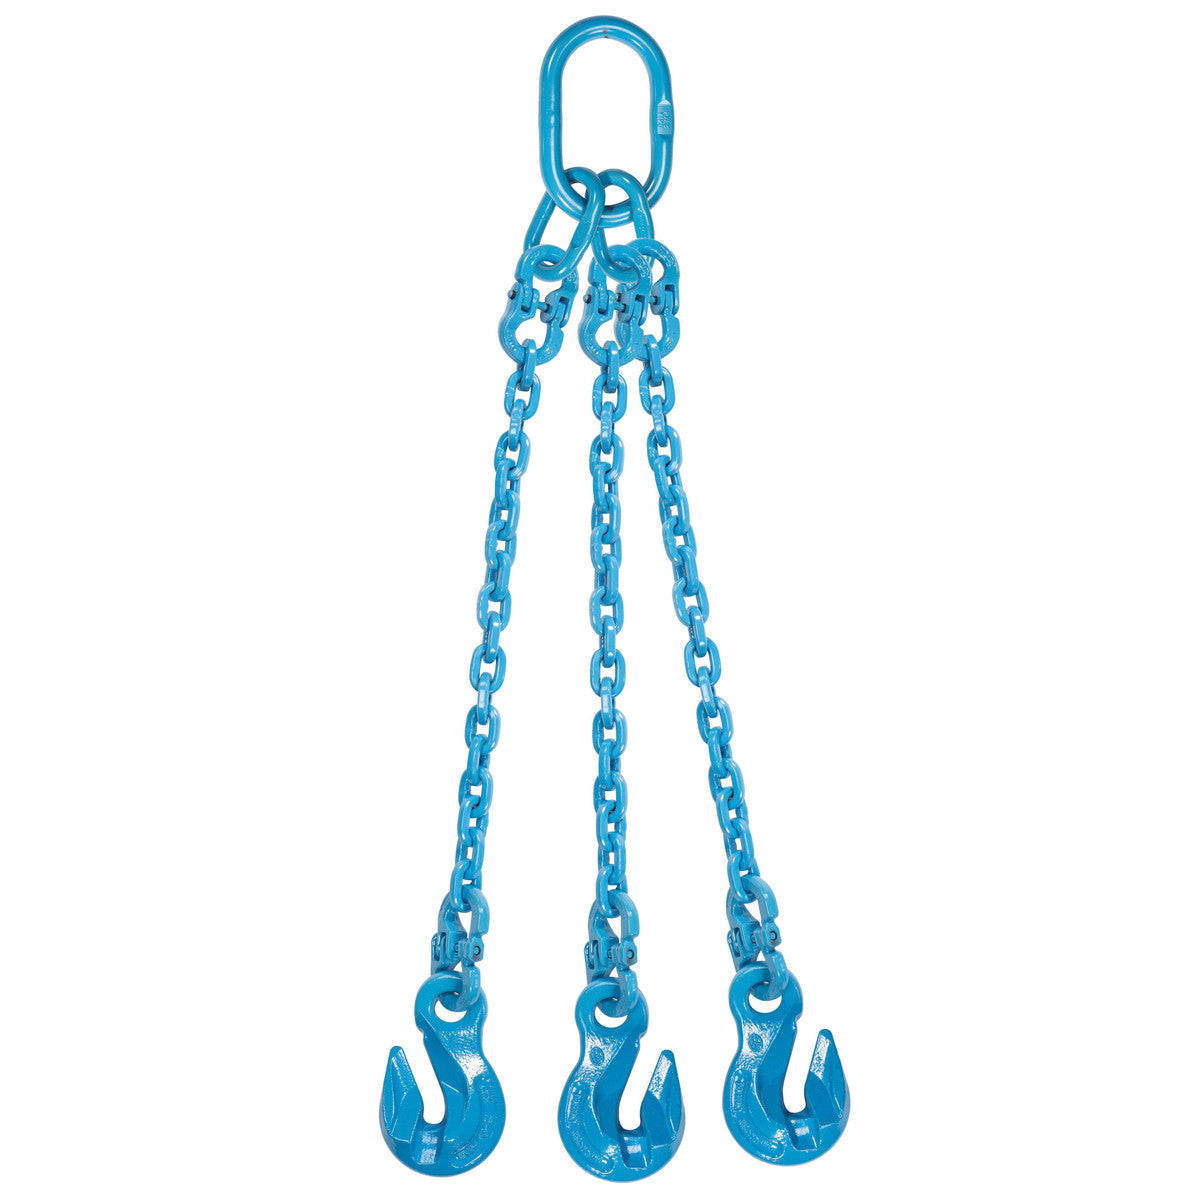 9/32" x 12' - Pewag 3 Leg Chain Sling w/ Grab Hooks - Grade 120